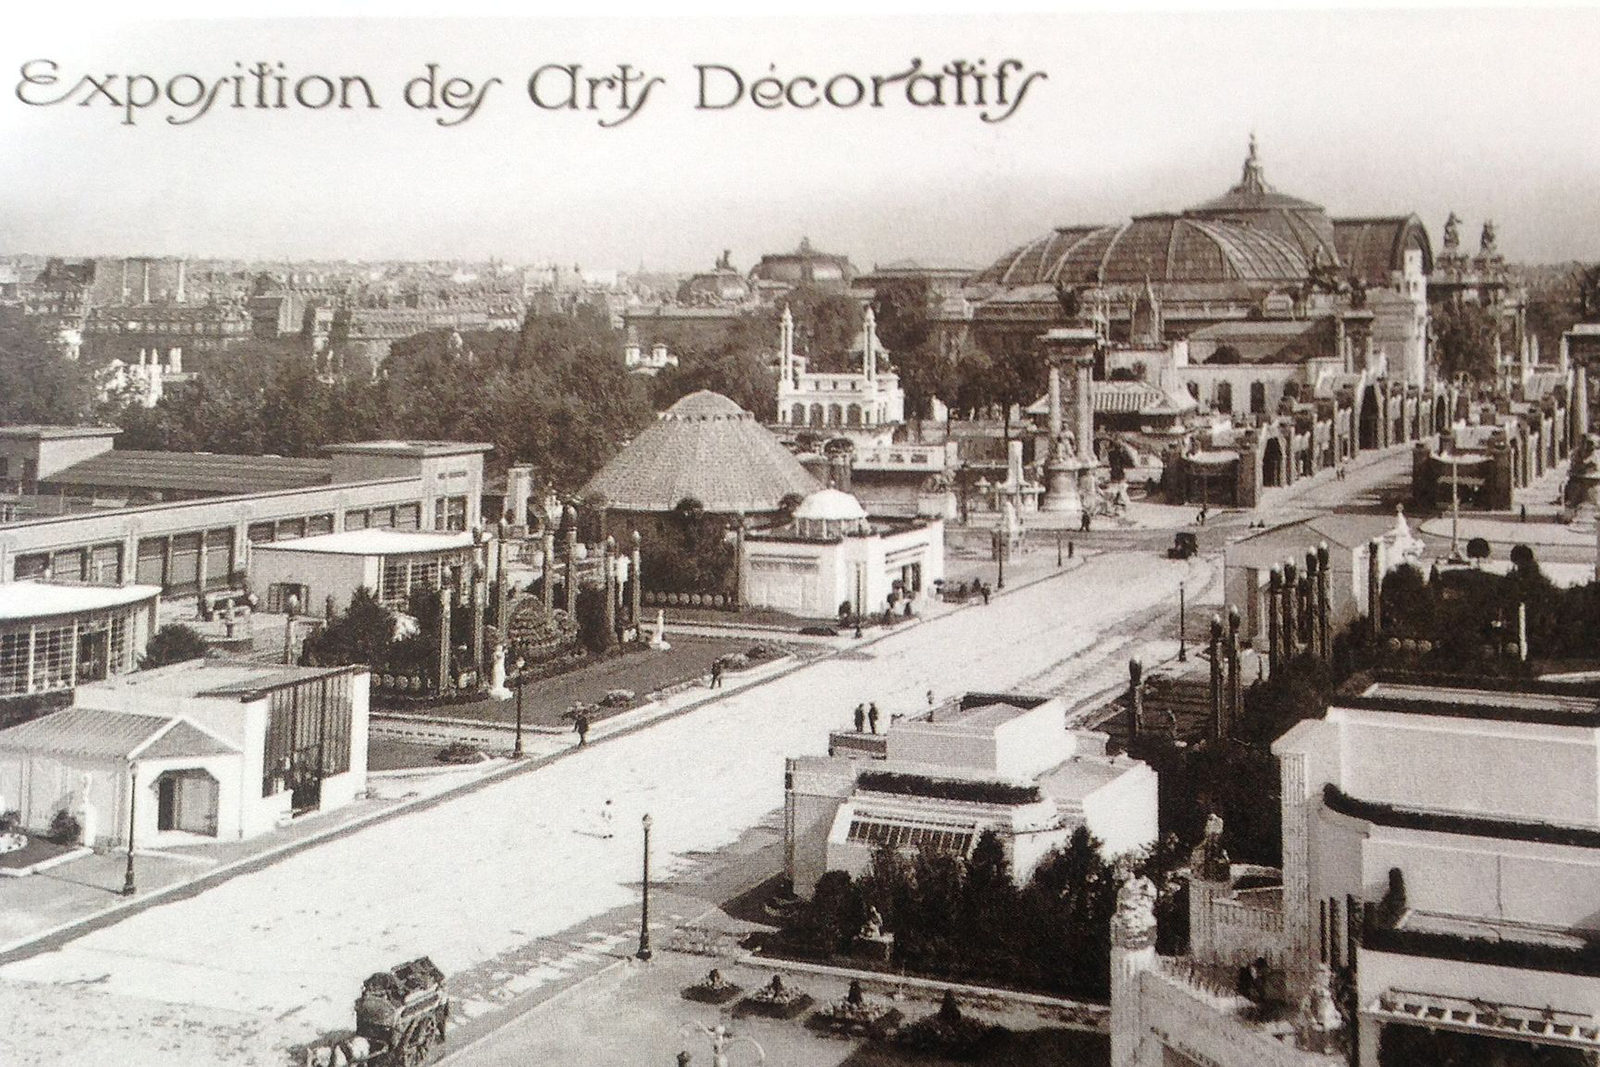 Название «ар-деко» связано со знаменитой Международной выставкой декоративных искусств и художественной промышленности, которая прошла в Париже в 1925 году